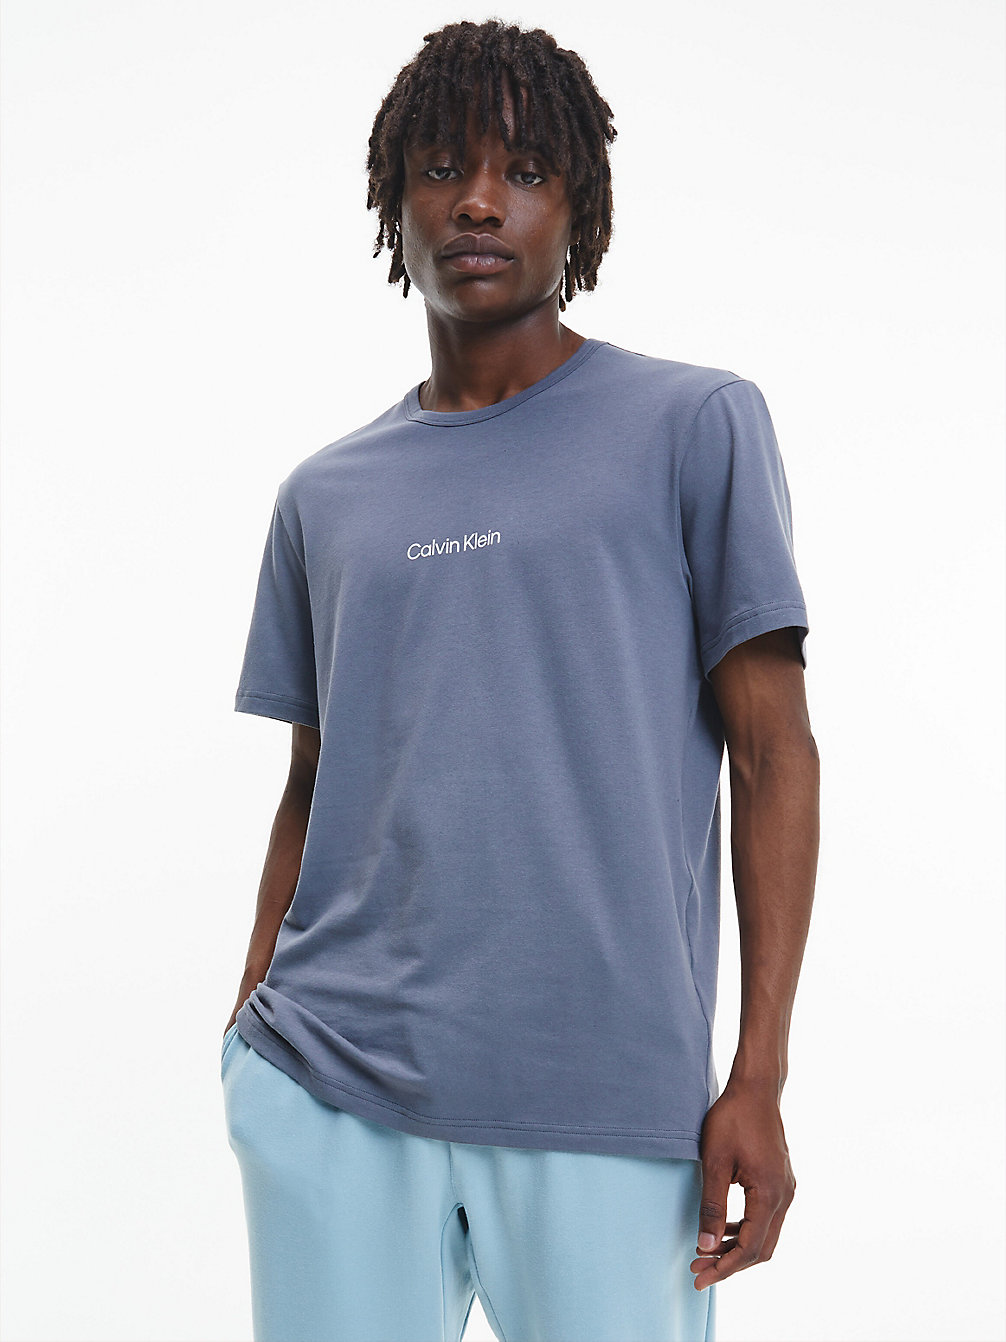 SLEEK GREY Lounge T-Shirt - Modern Structure undefined men Calvin Klein